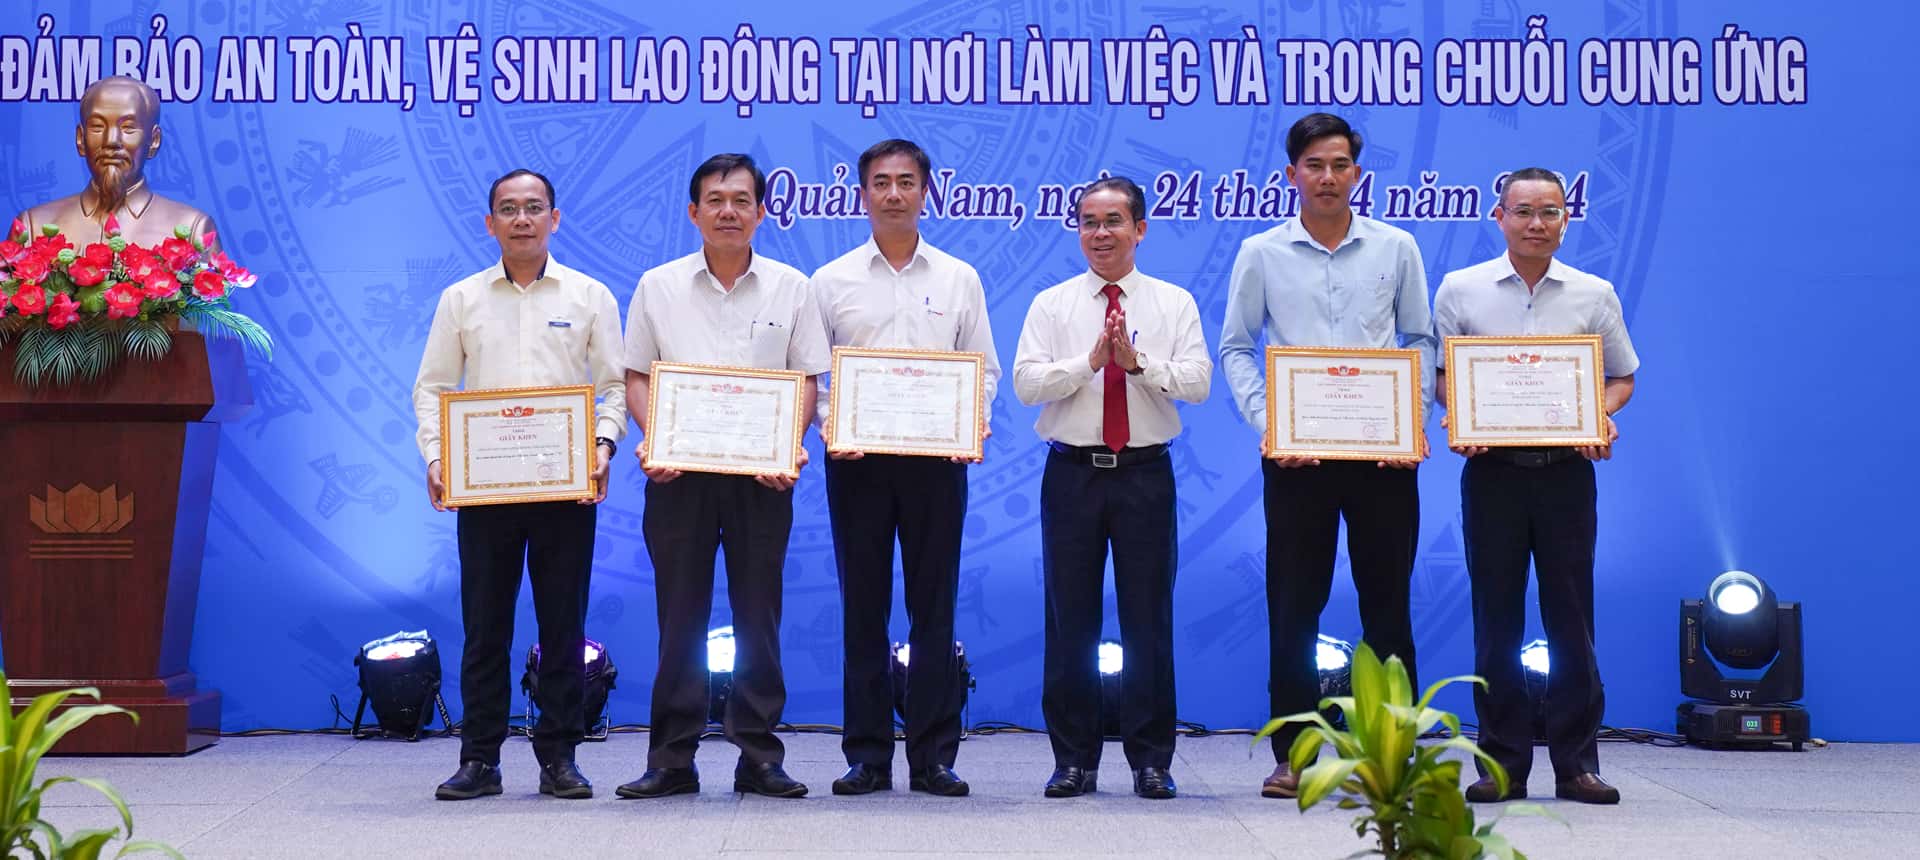 Công ty THACO Mazda nhận danh hiệu đơn vị có thành tích xuất sắc trong công tác ATVSLĐ do Cục An toàn lao động (Bộ Lao động - Thương bình và Xã hội) trao tặng